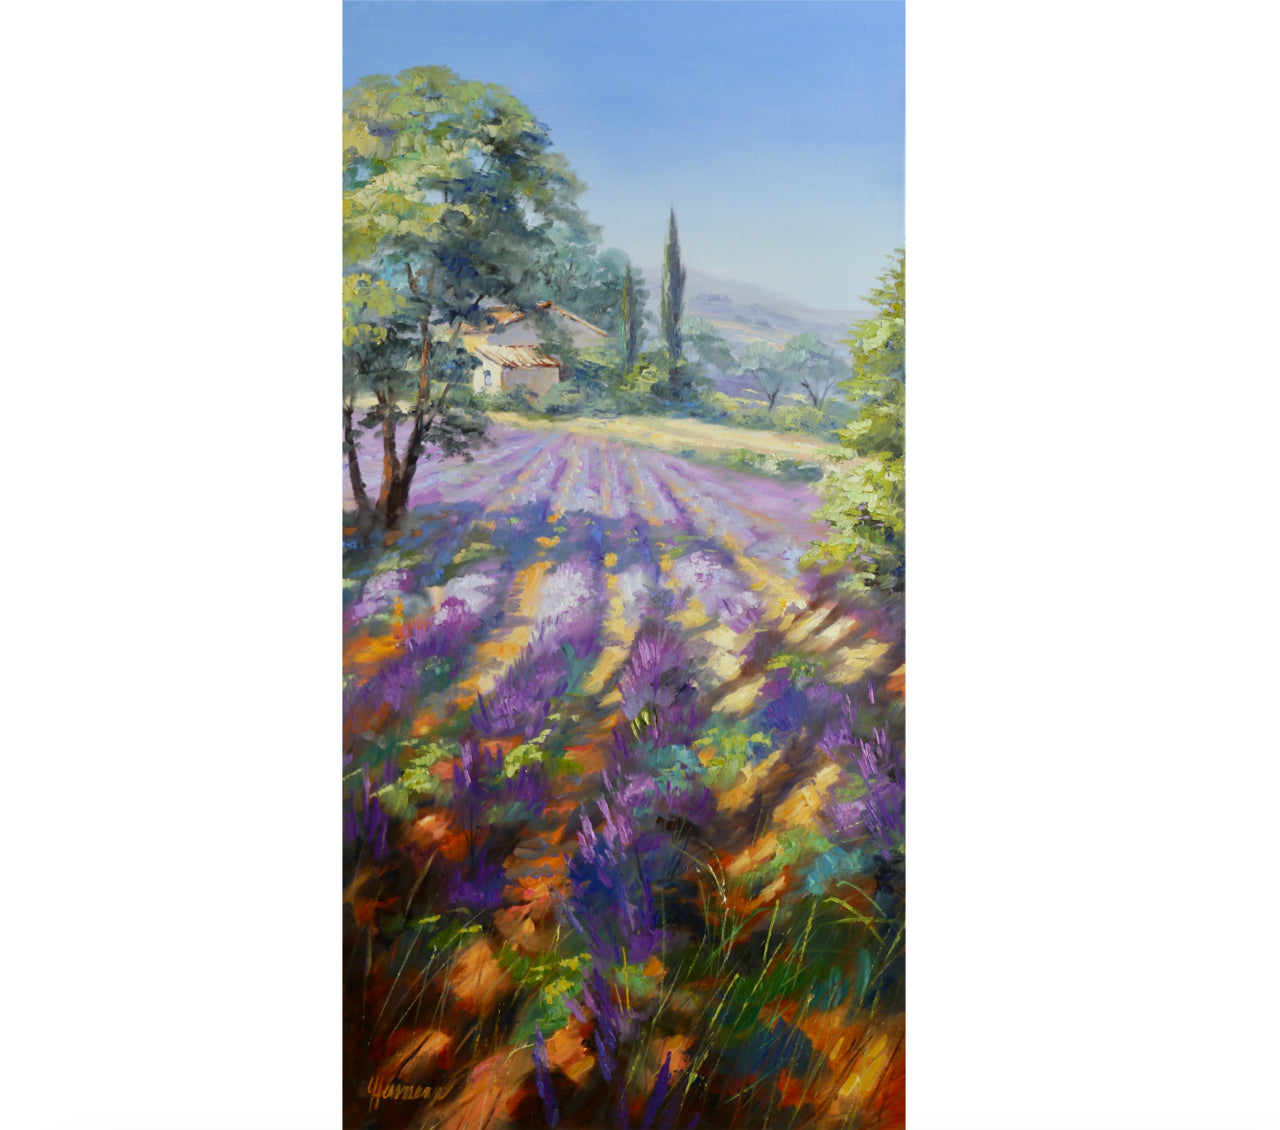 Ute Herrmann - Rows of lavender in the morning light